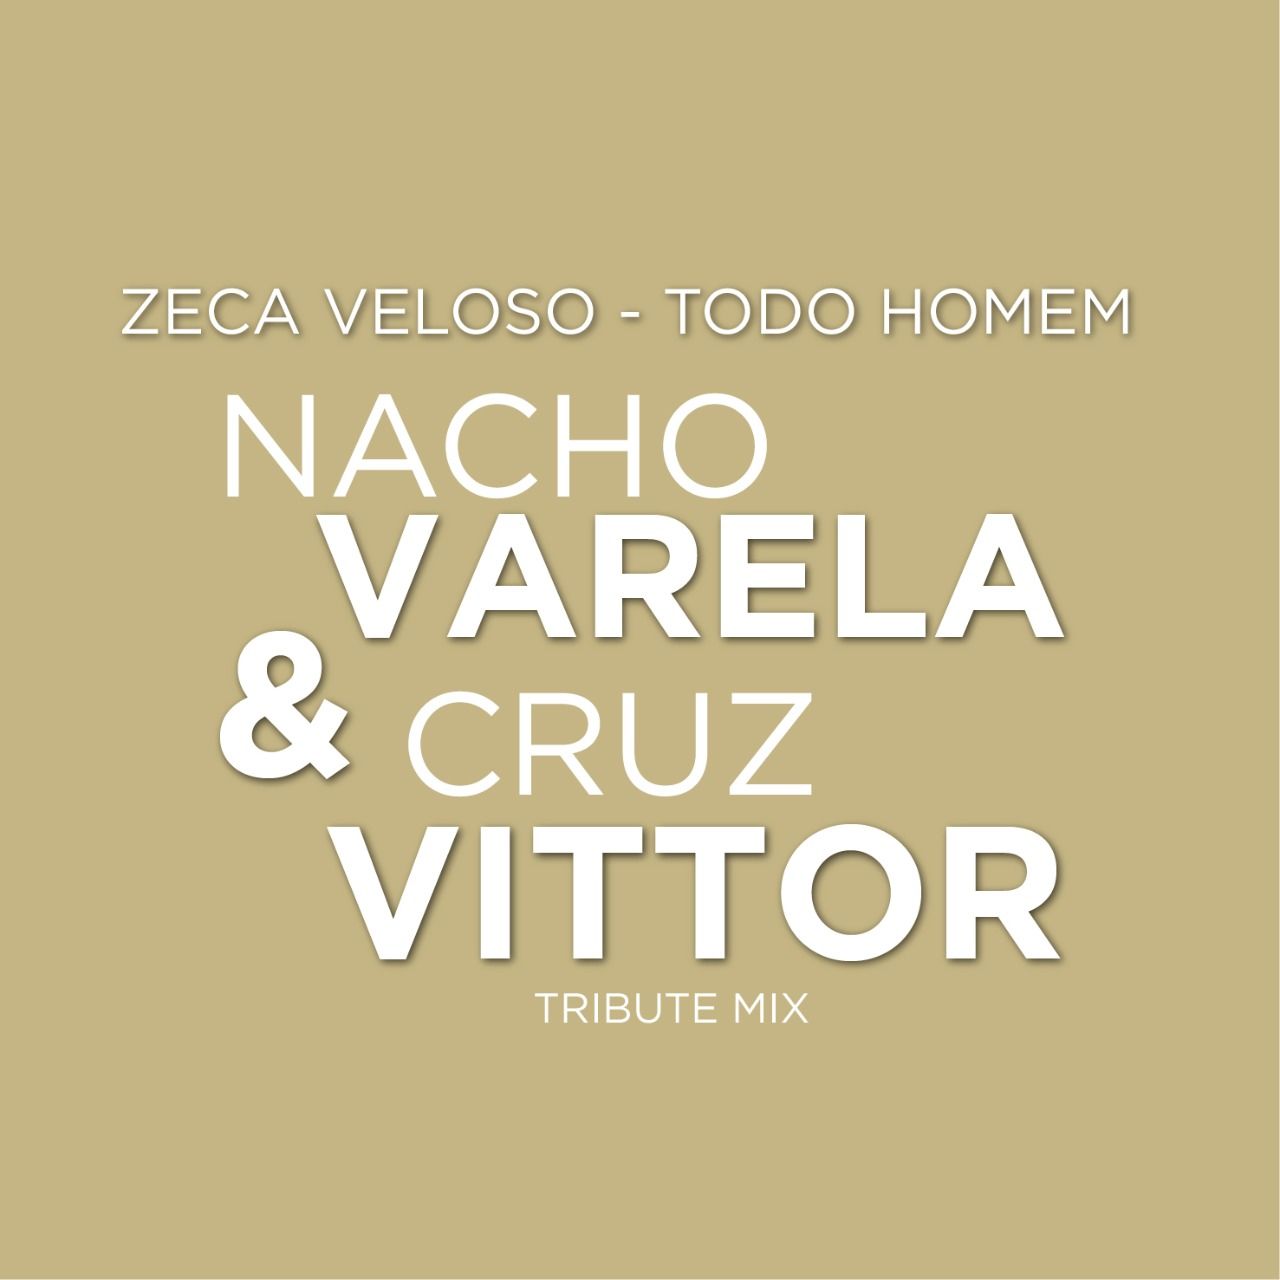 Descarca Zeca Veloso - Todo Homem (Nacho Varela & Cruz Vittor Tribute Mix) [Free Download]